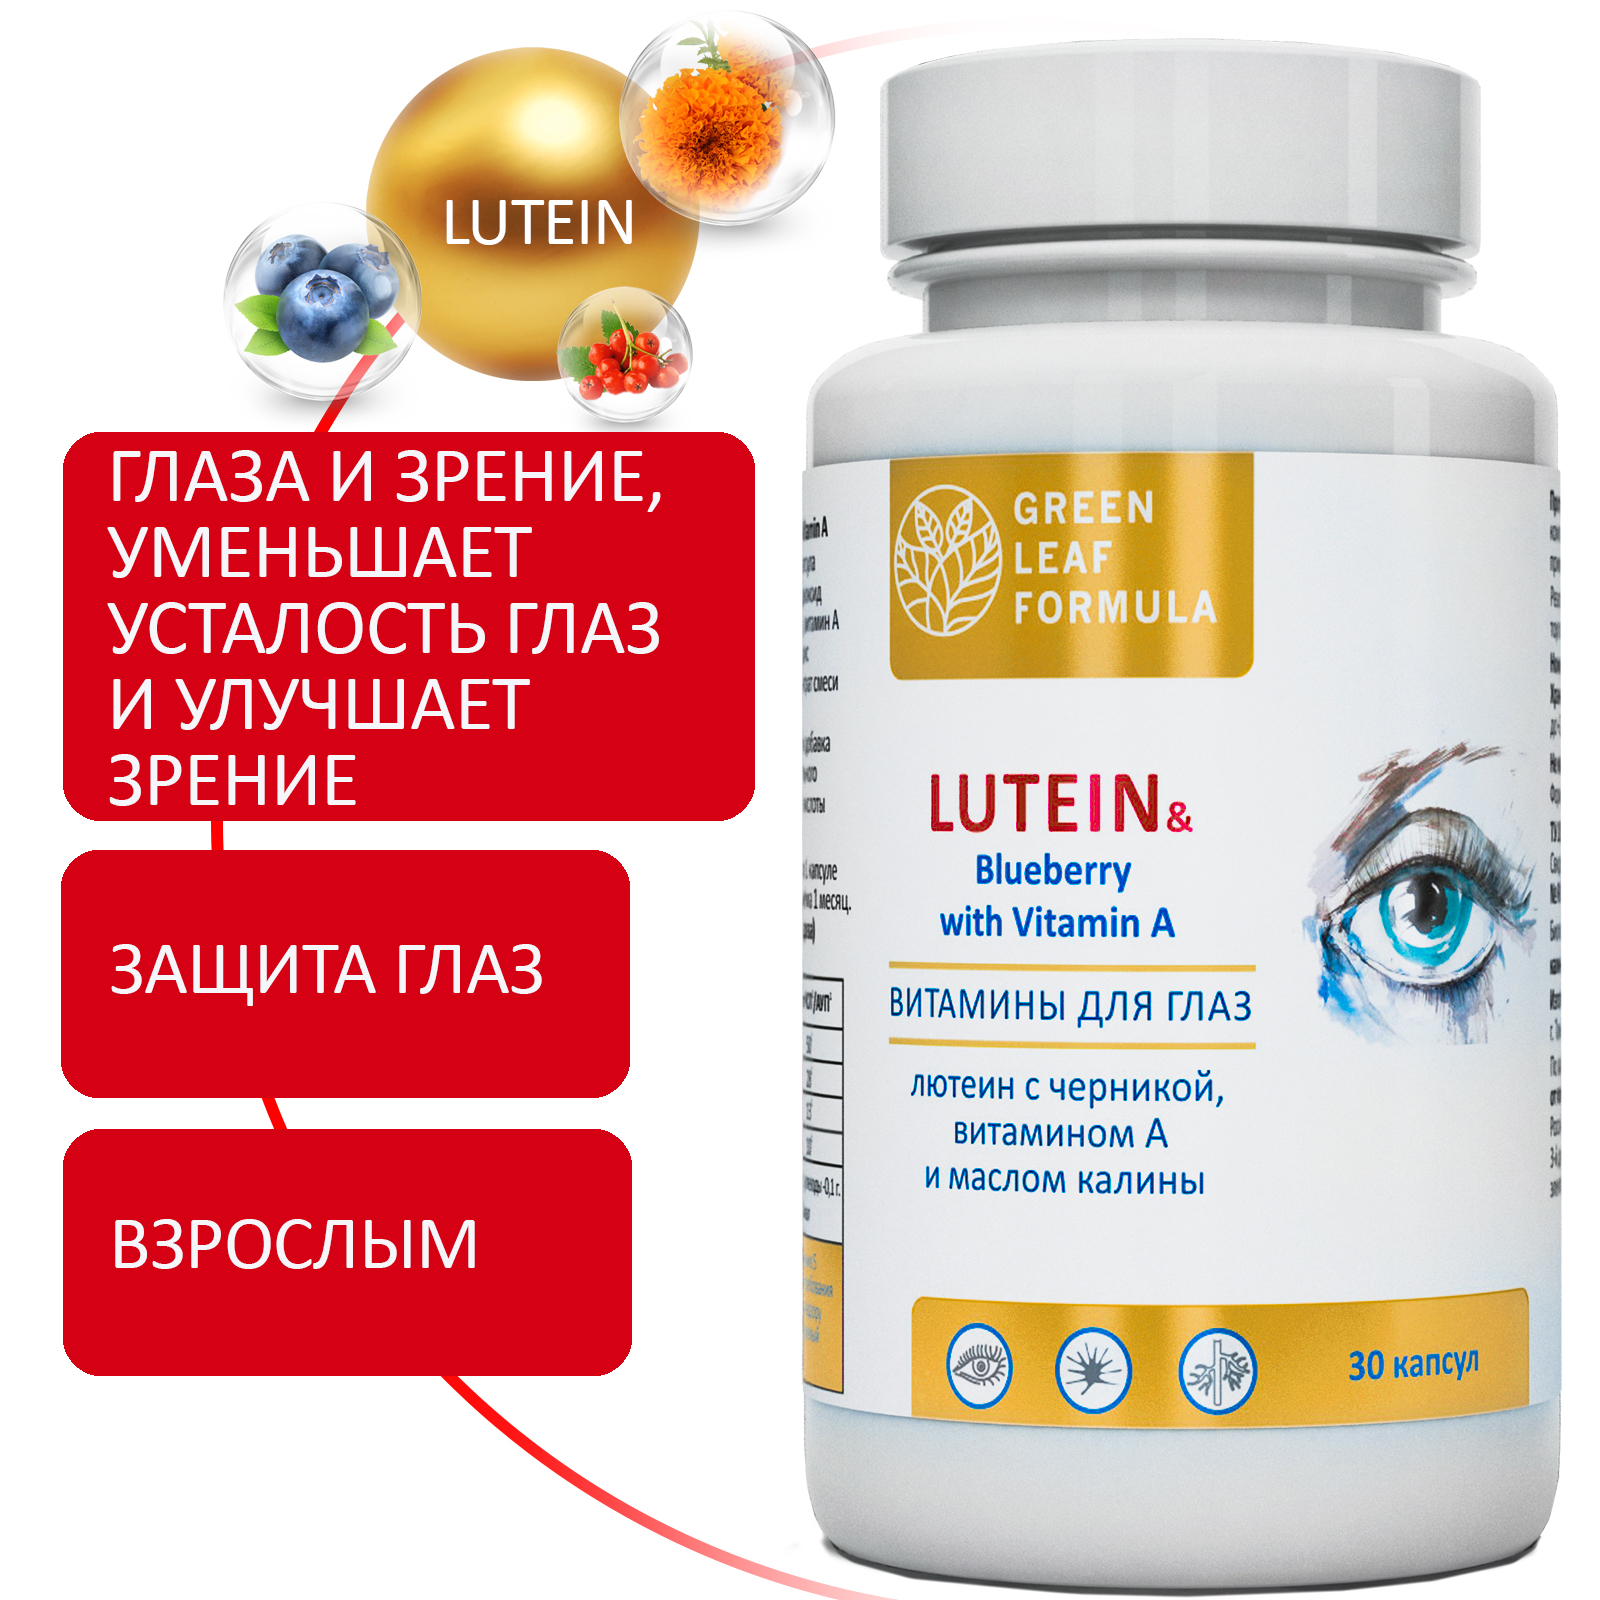 Витамины для глаз и зрения Green Leaf Formula лютеин комплекс черника витамин А астаксантин антиоксиданты 2 банки - фото 2